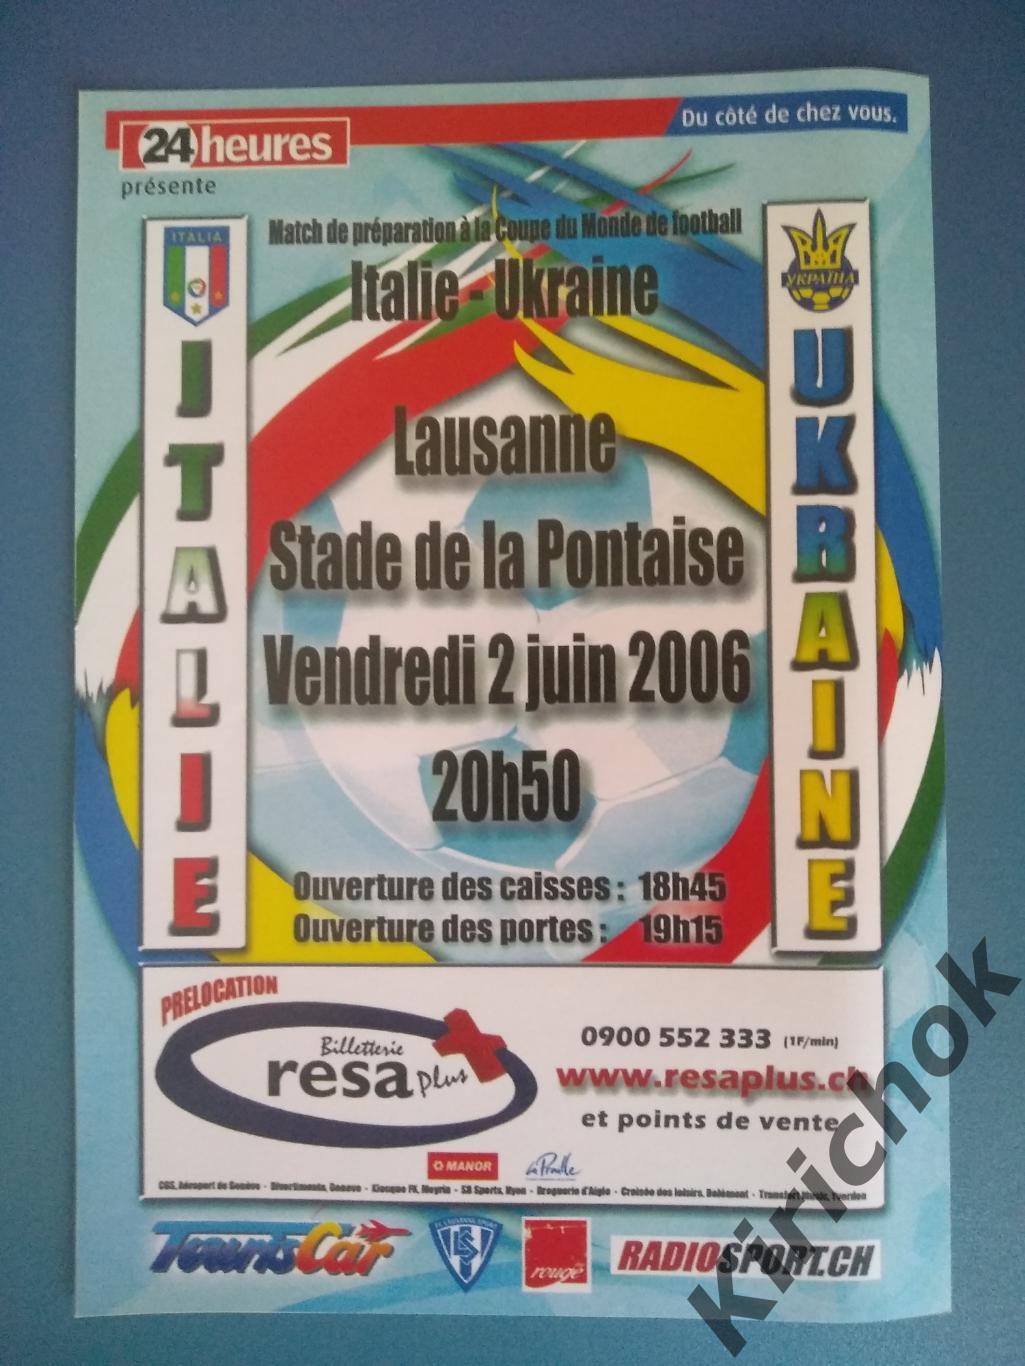 VIP! Италия - Украина 2006